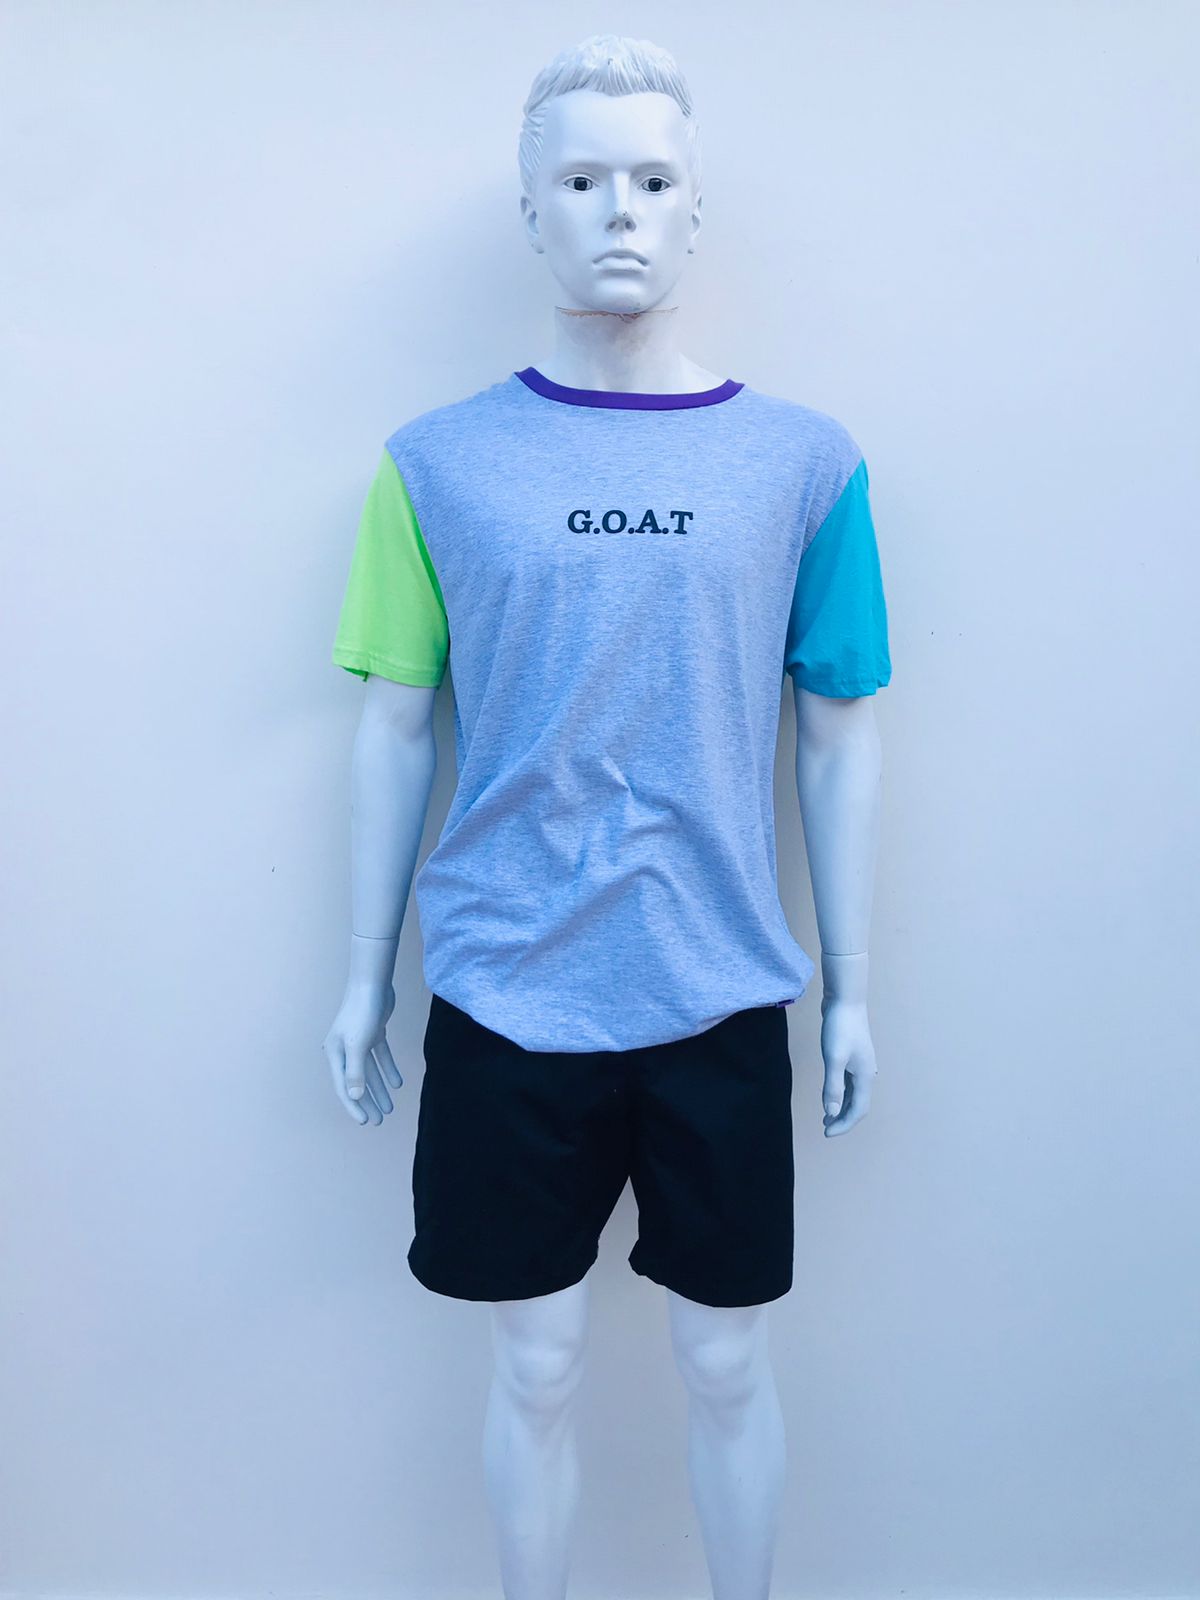 T-shirt W X Y Z original de color gris con manga derecha verde manga izquierda azul y cuello a color morado con letra G.O.A.T en negro al frente